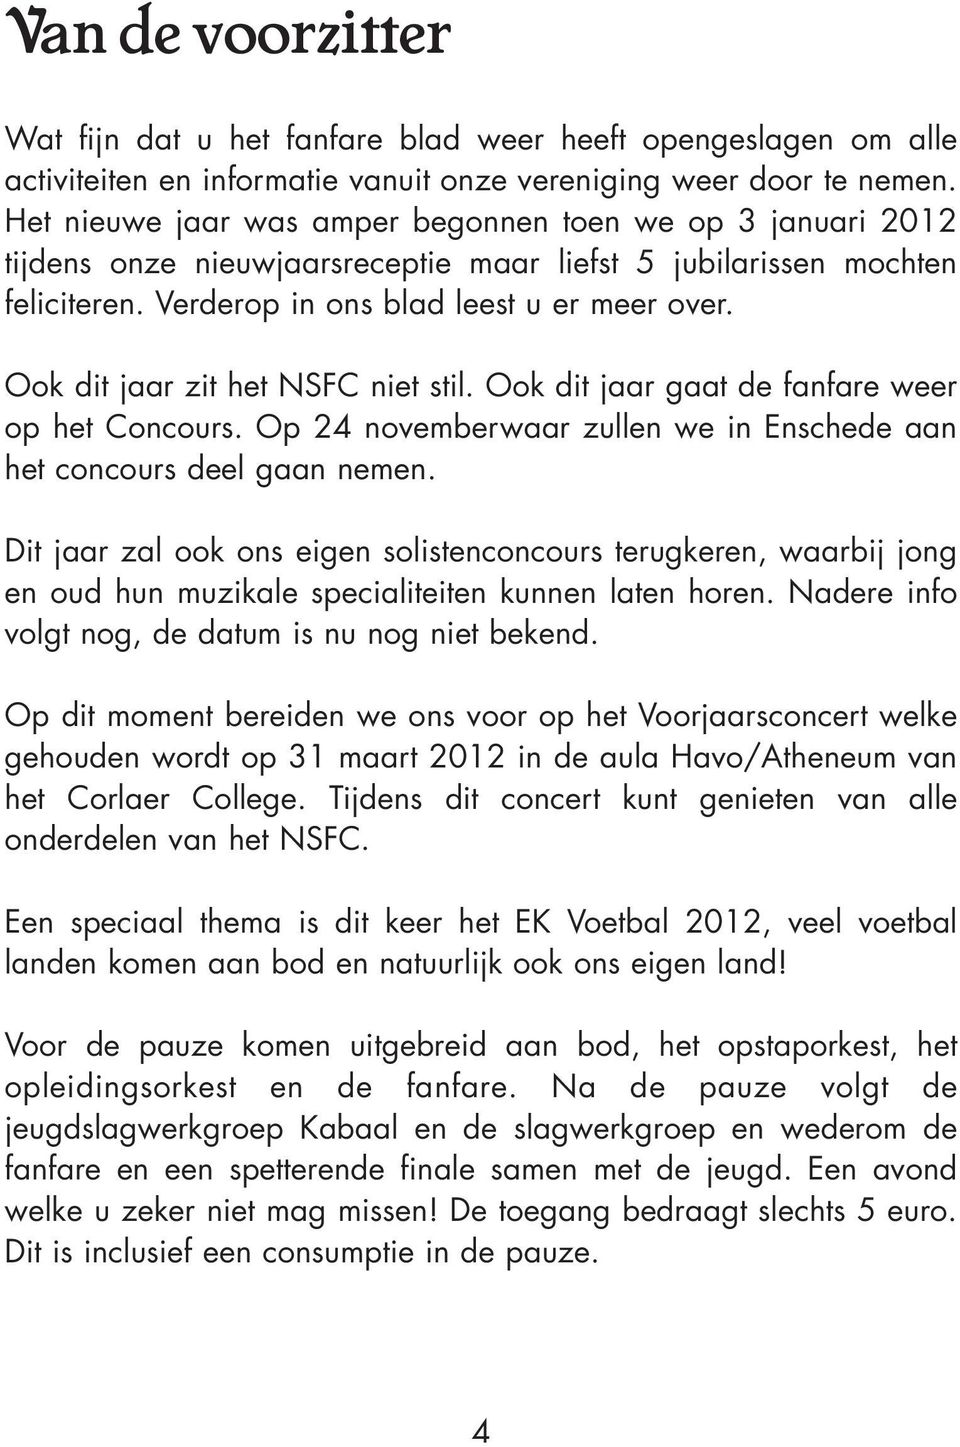 Ook dit jaar zit het NSFC niet stil. Ook dit jaar gaat de fanfare weer op het Concours. Op 24 novemberwaar zullen we in Enschede aan het concours deel gaan nemen.